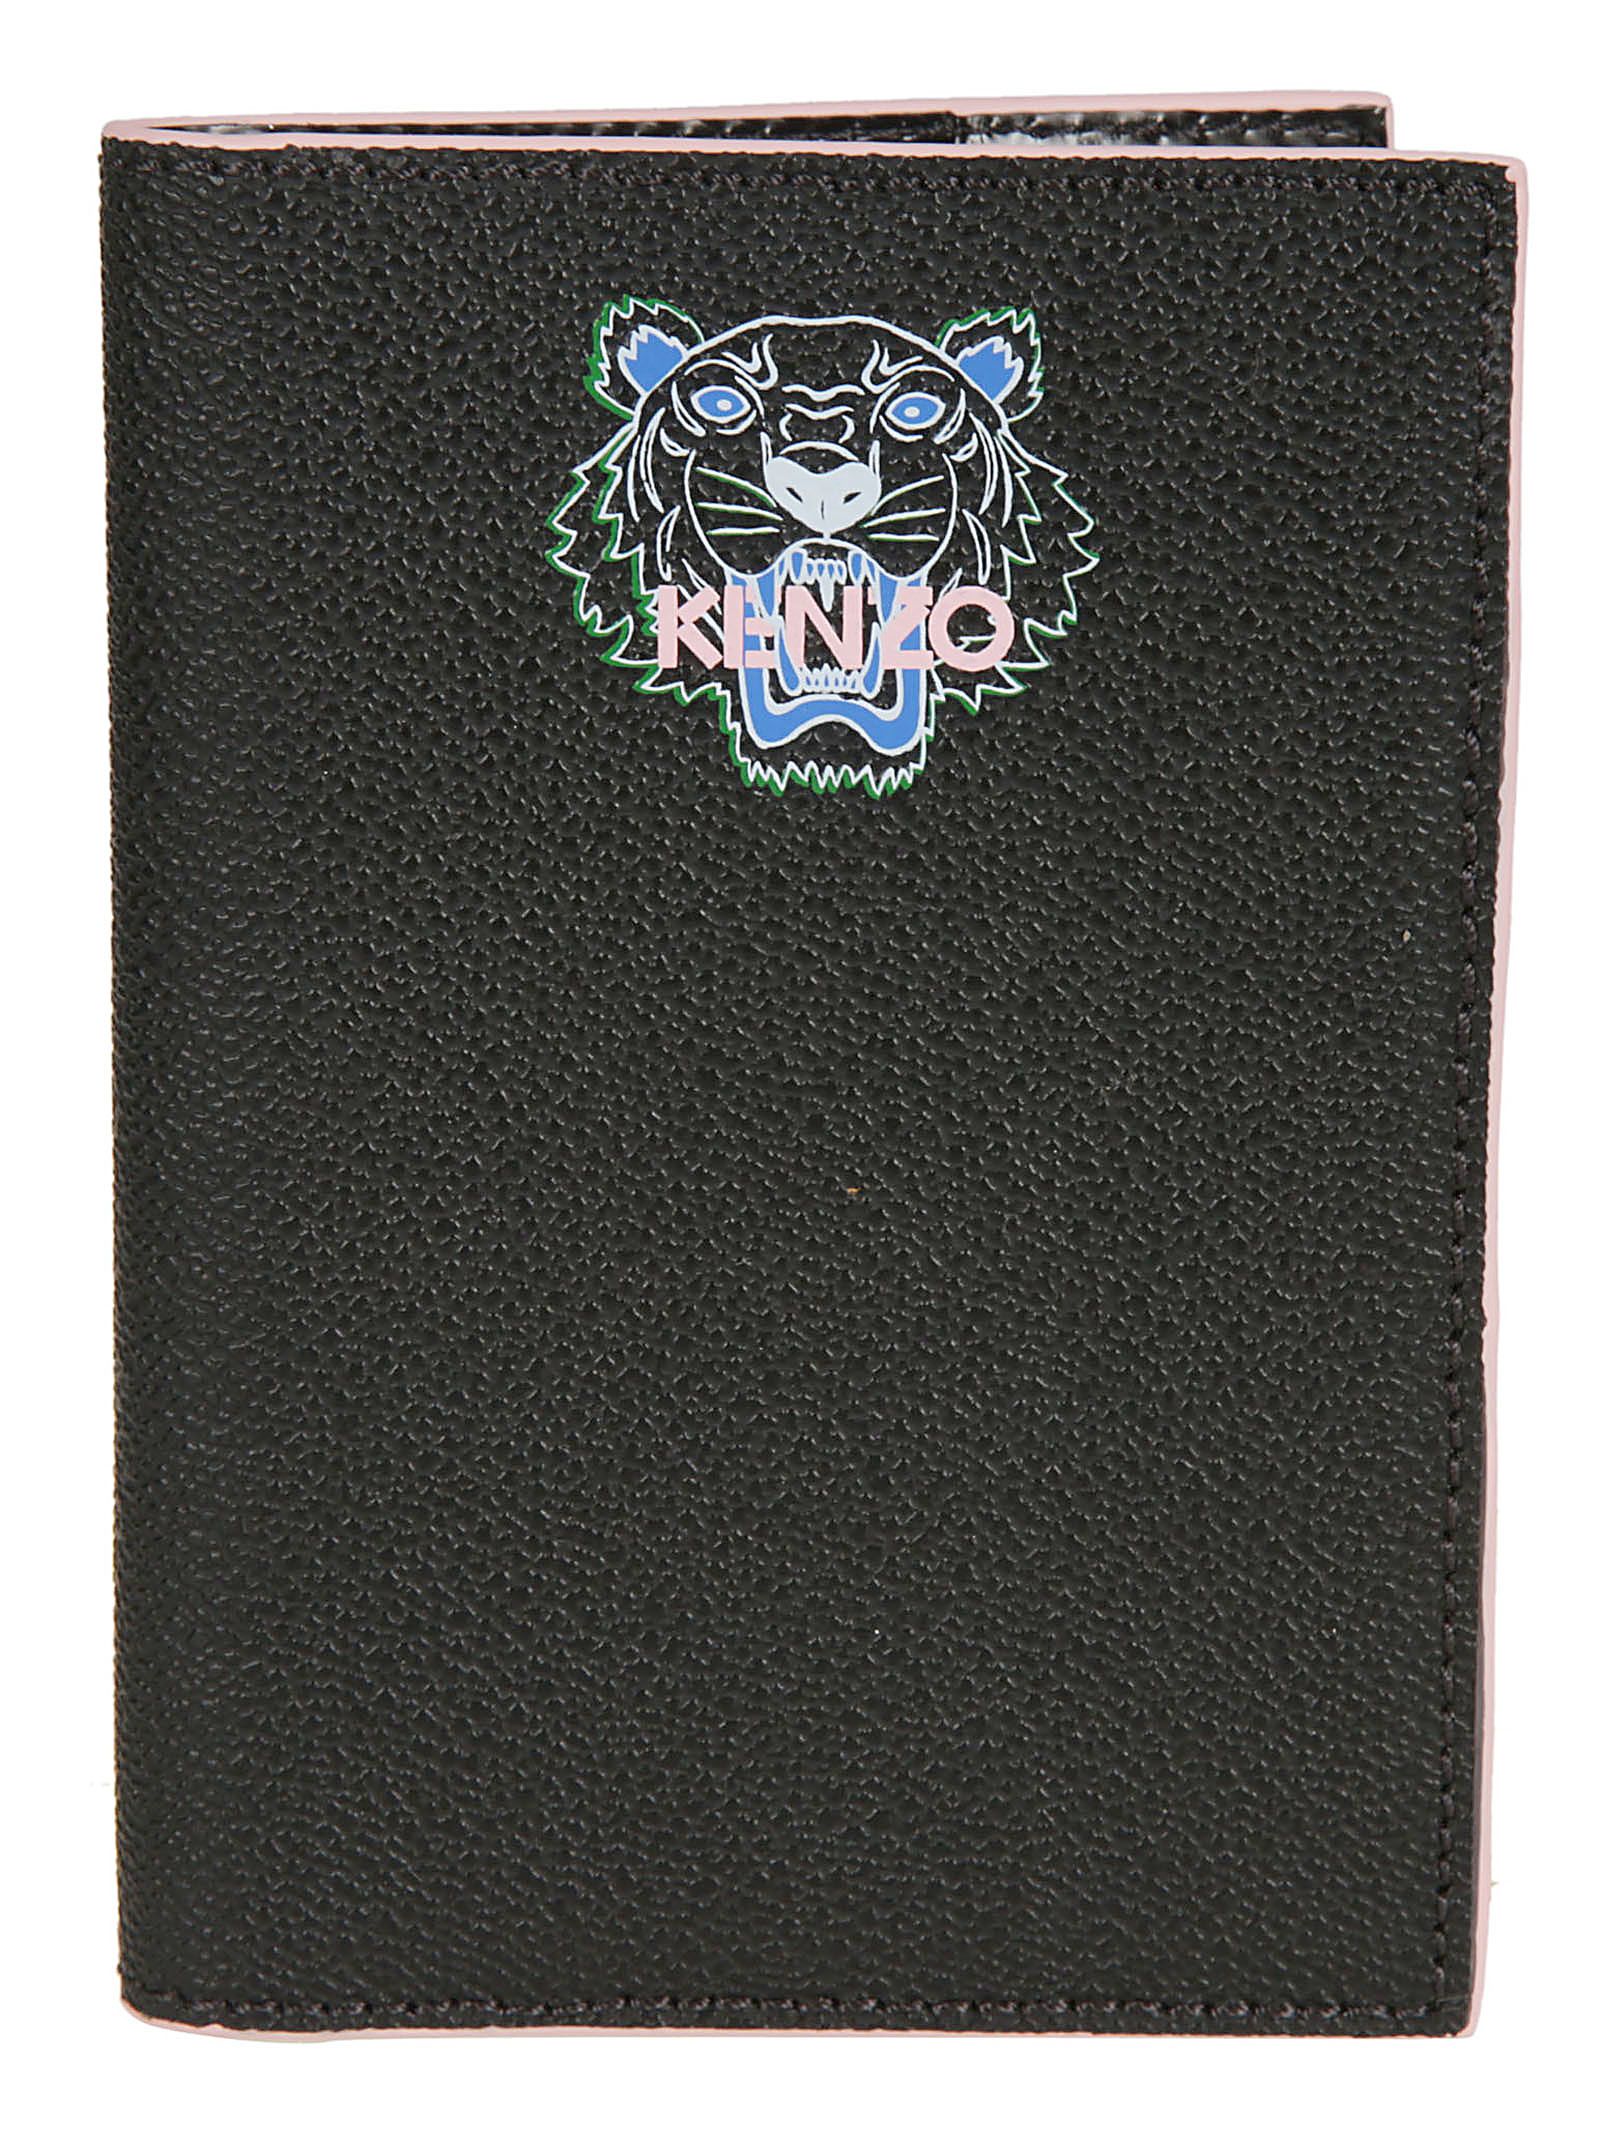 kenzo passport cover